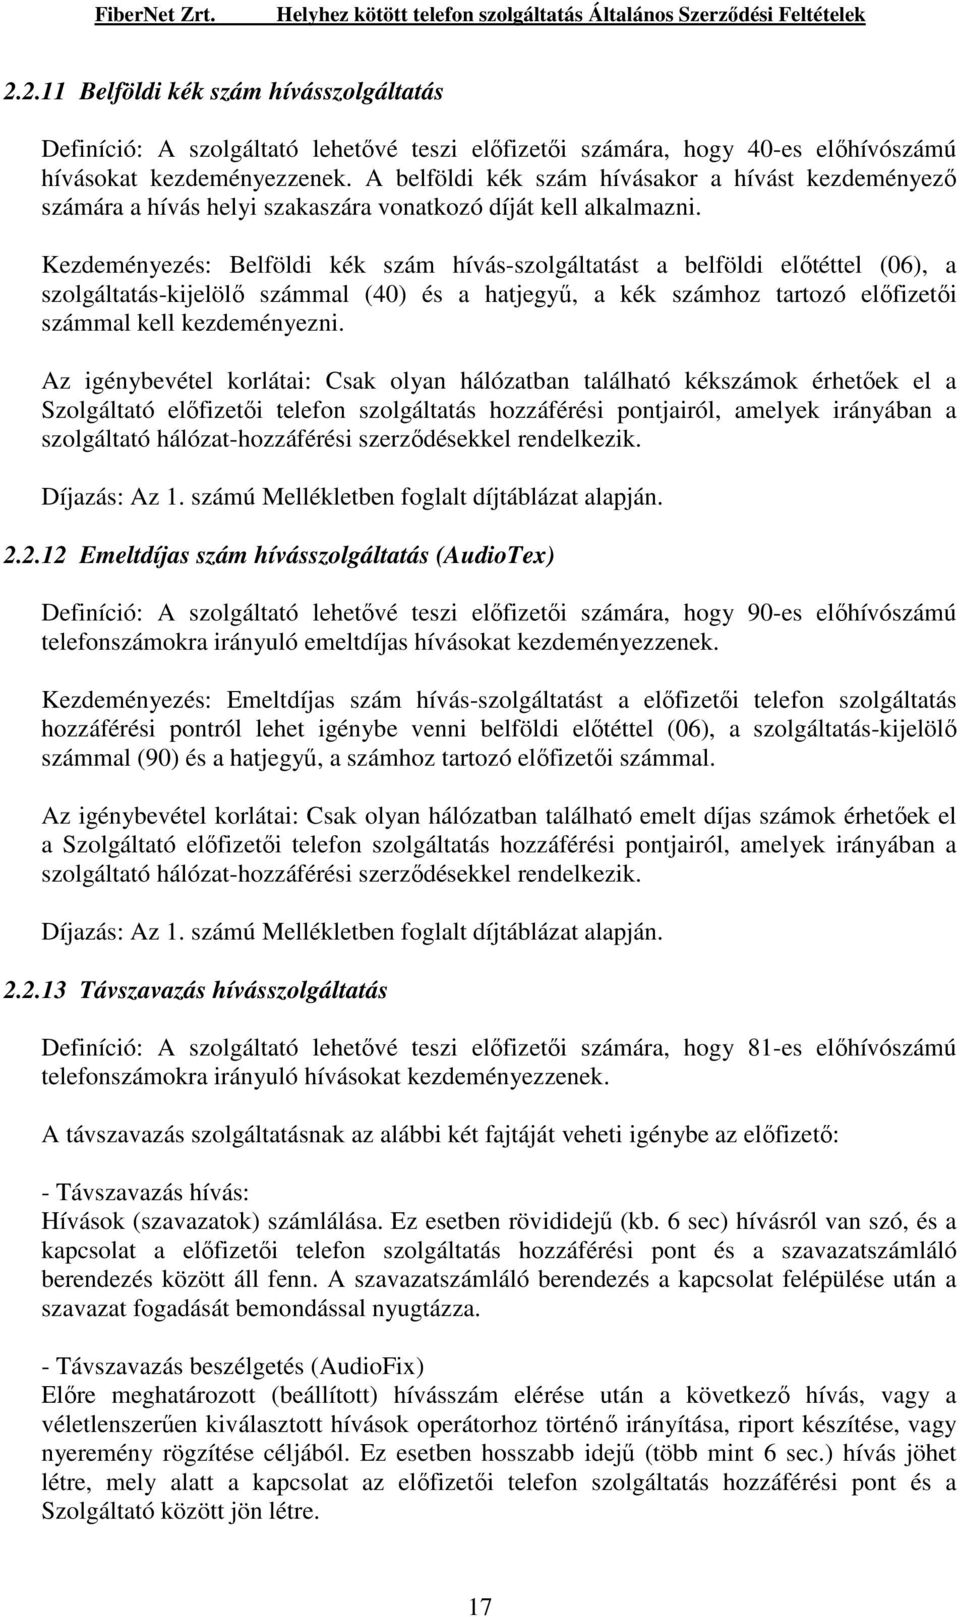 Kezdeményezés: Belföldi kék szám hívás-szolgáltatást a belföldi elıtéttel (06), a szolgáltatás-kijelölı számmal (40) és a hatjegyő, a kék számhoz tartozó elıfizetıi számmal kell kezdeményezni.